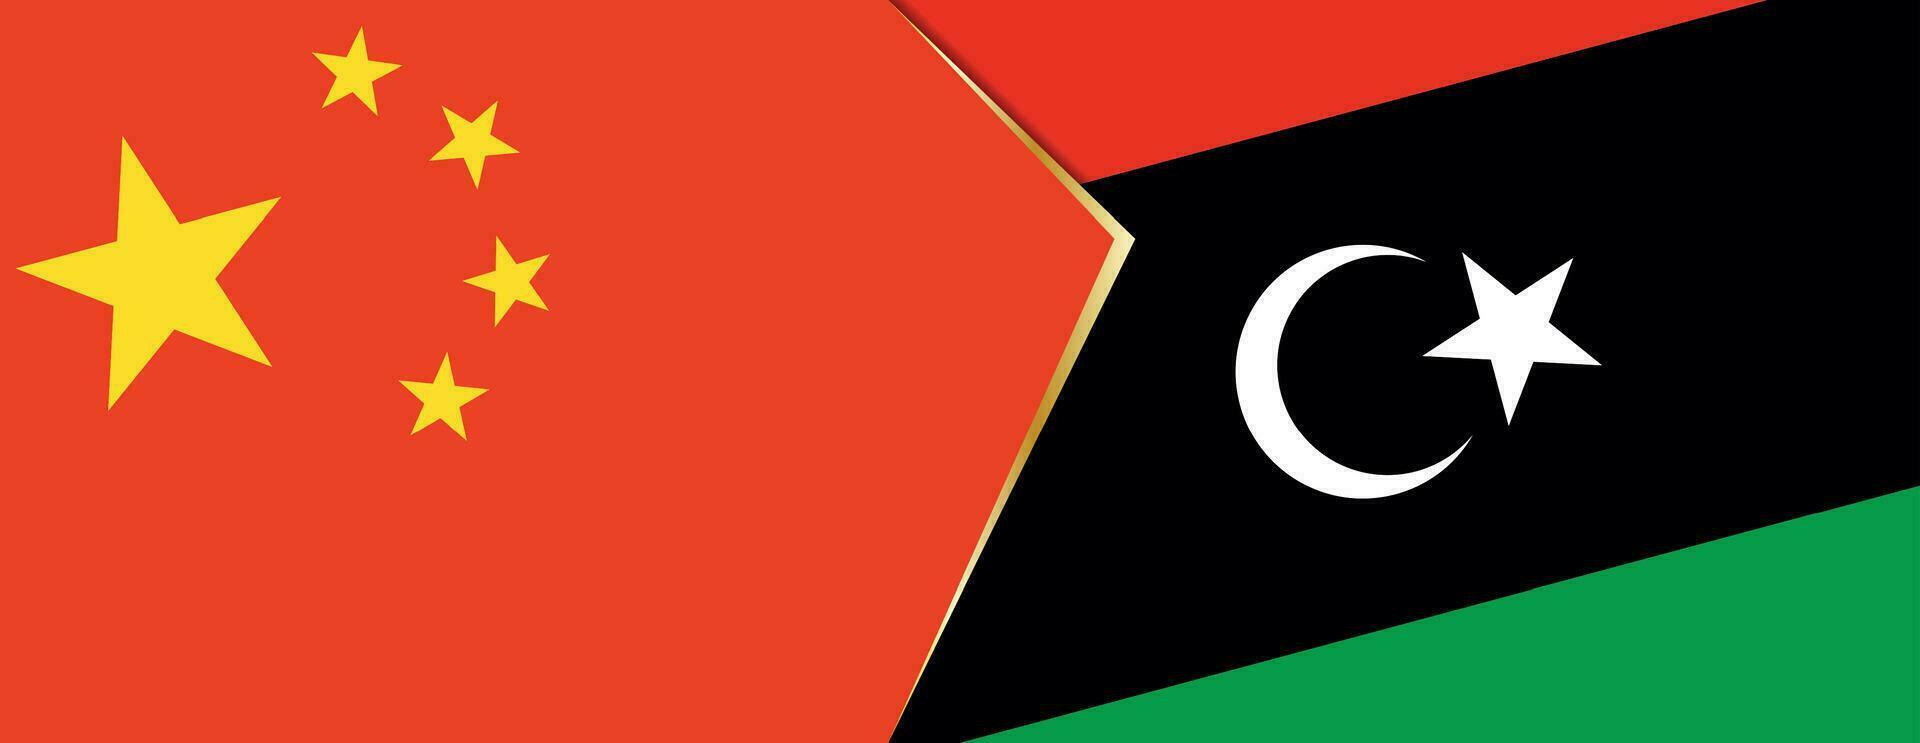 China e Líbia bandeiras, dois vetor bandeiras.